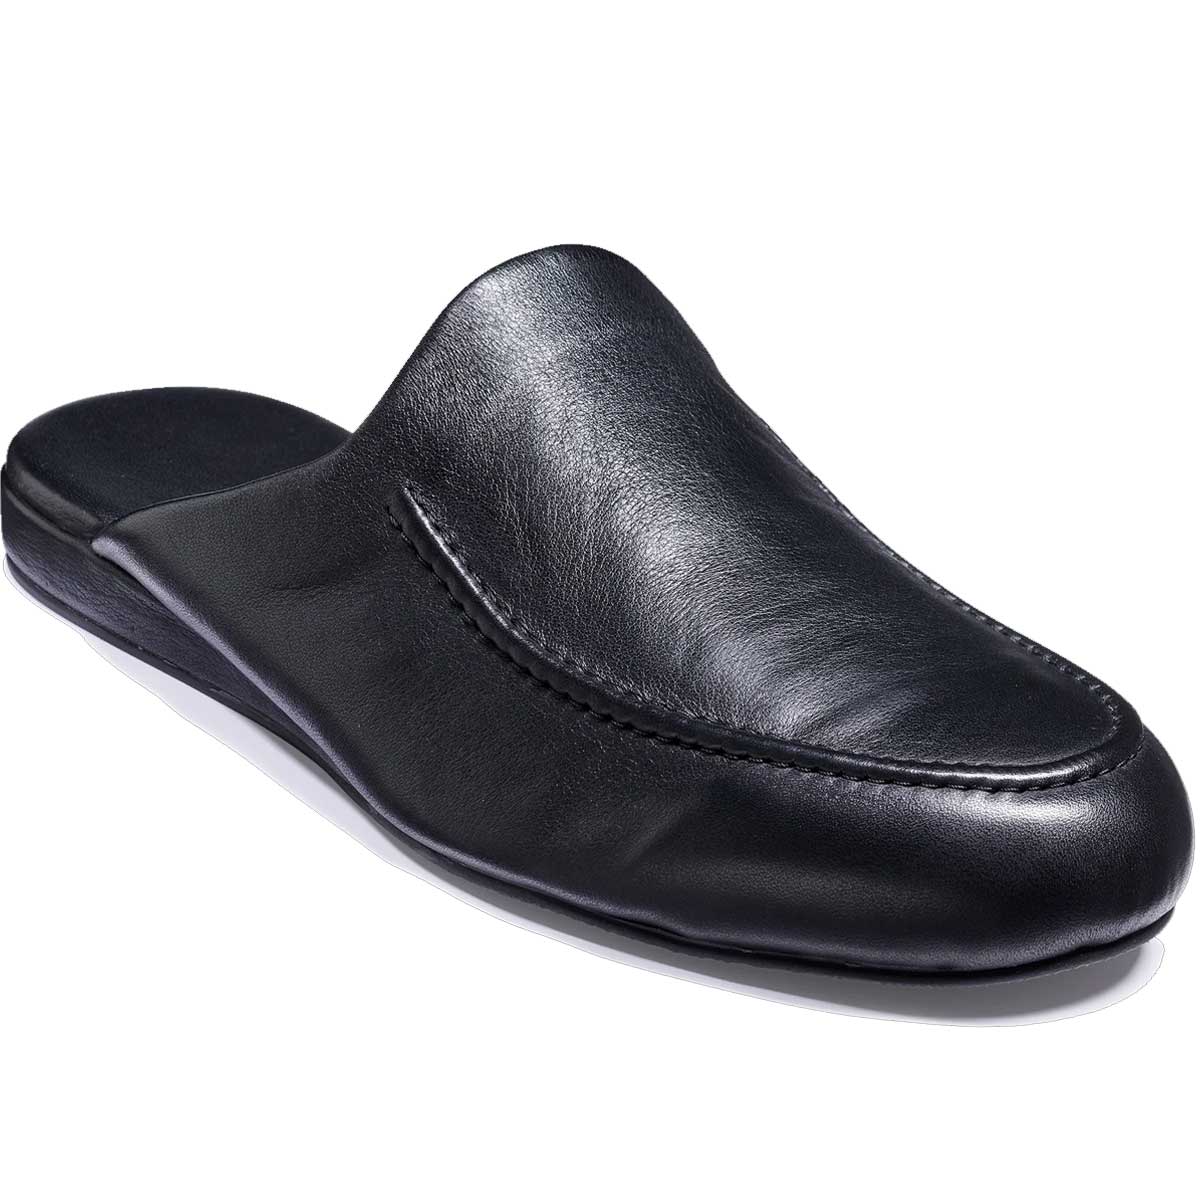 BARKER Aspen Slippers - Mens - Black Leather